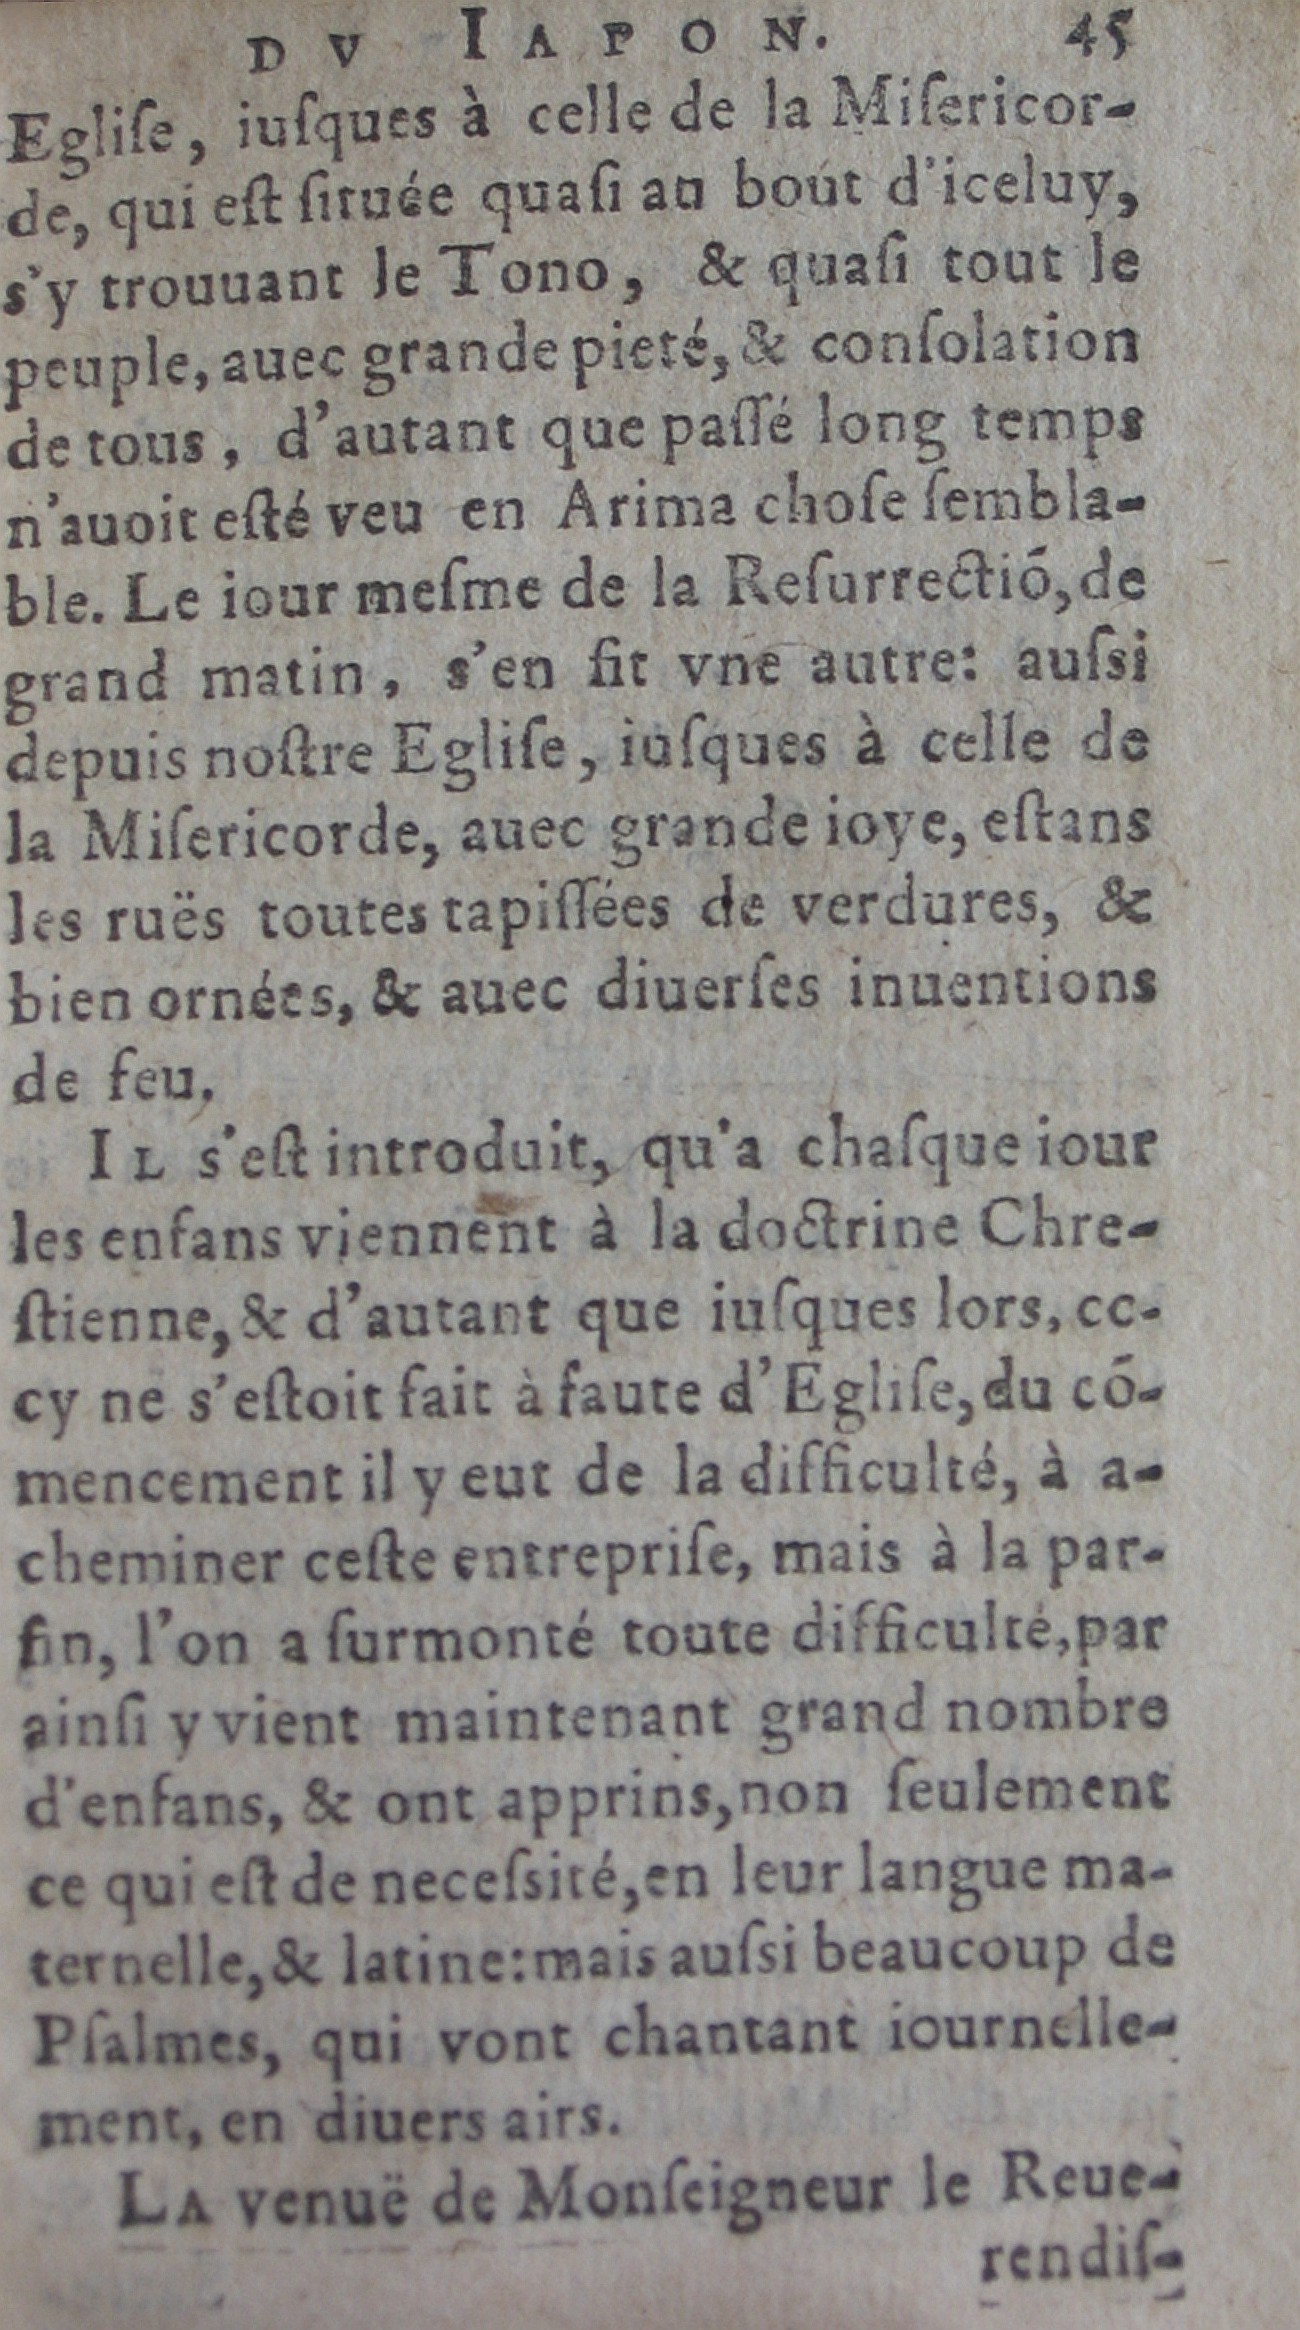 p. 45